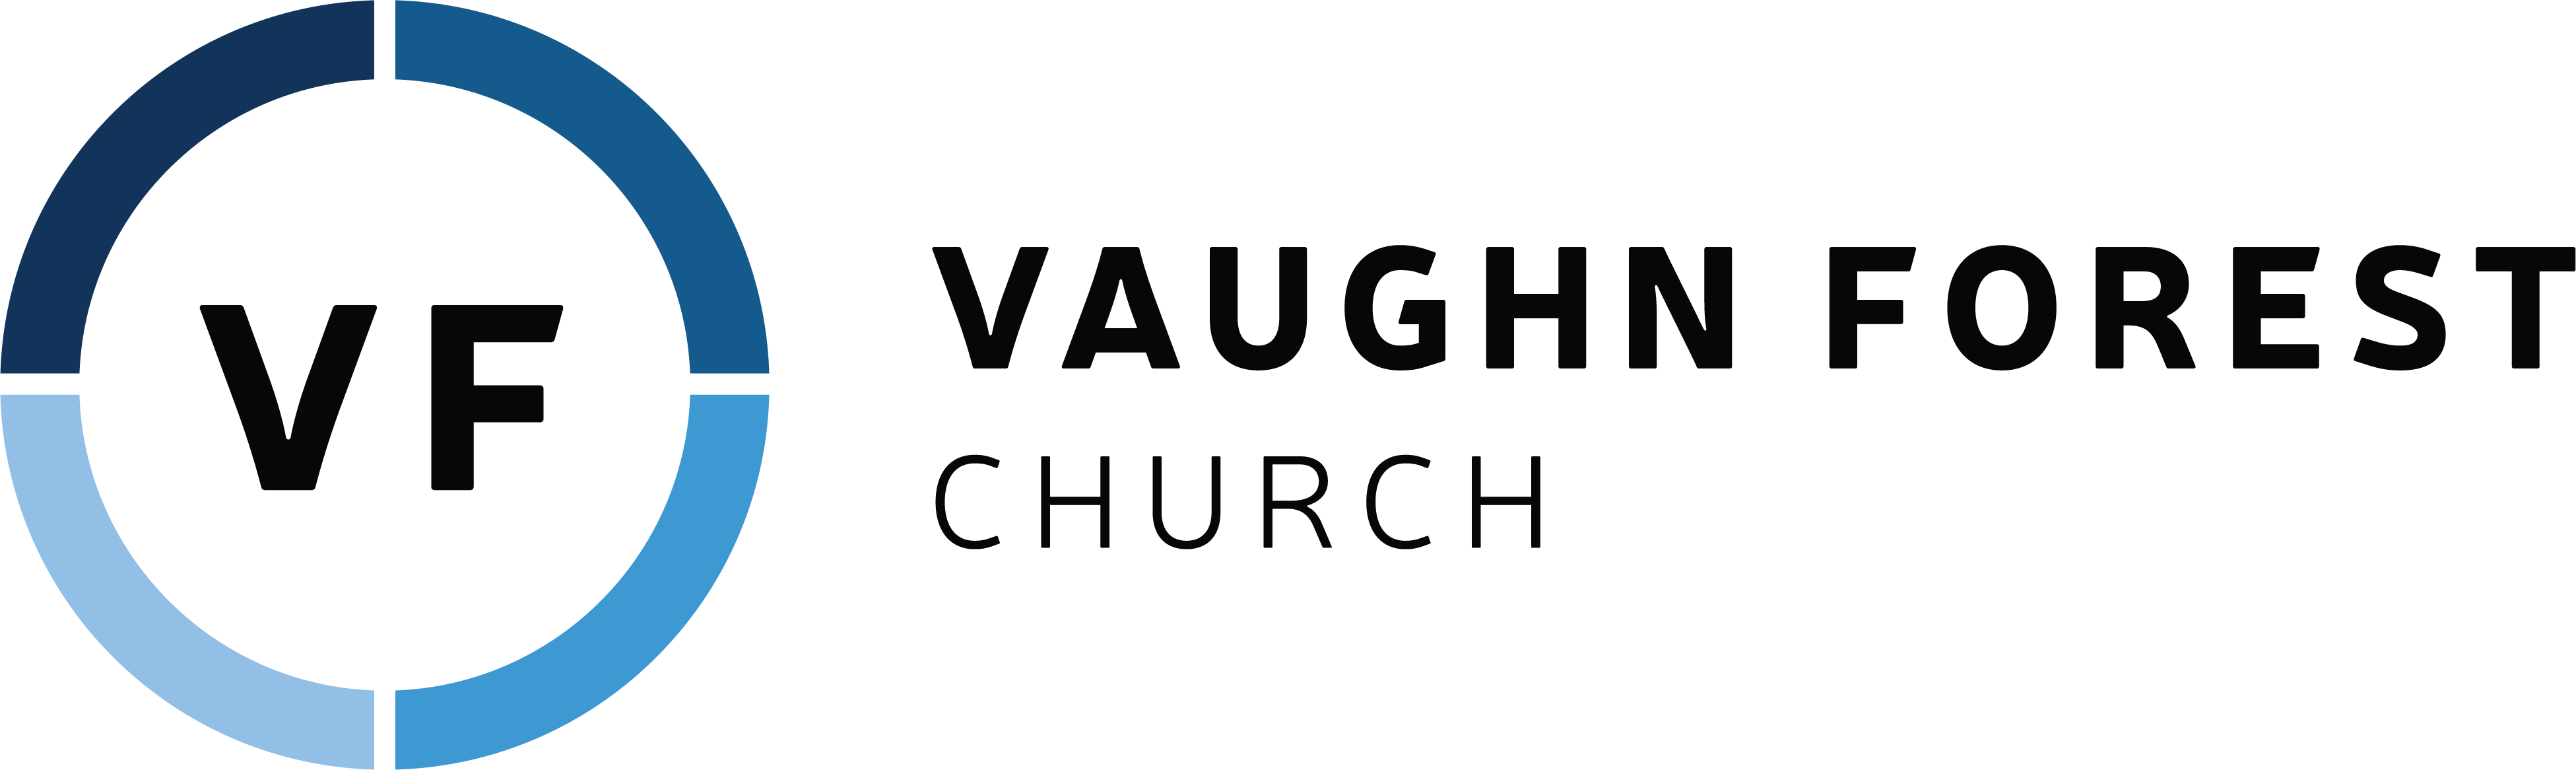 Vaughn Logo - Vaughn Forest Church | Montgomery, Alabama